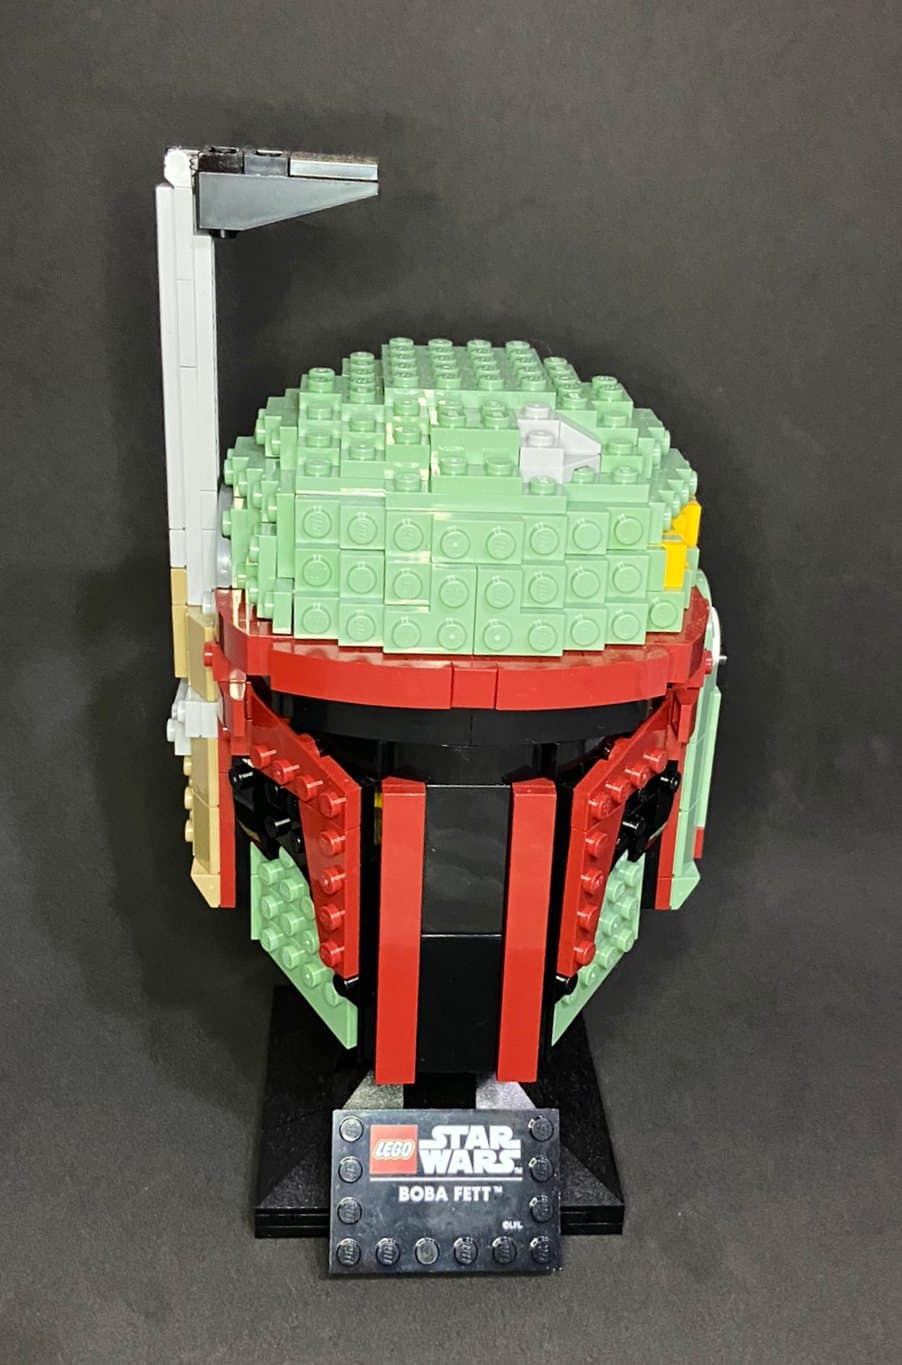 LEGO Star Wars Capacete de Boba Fett